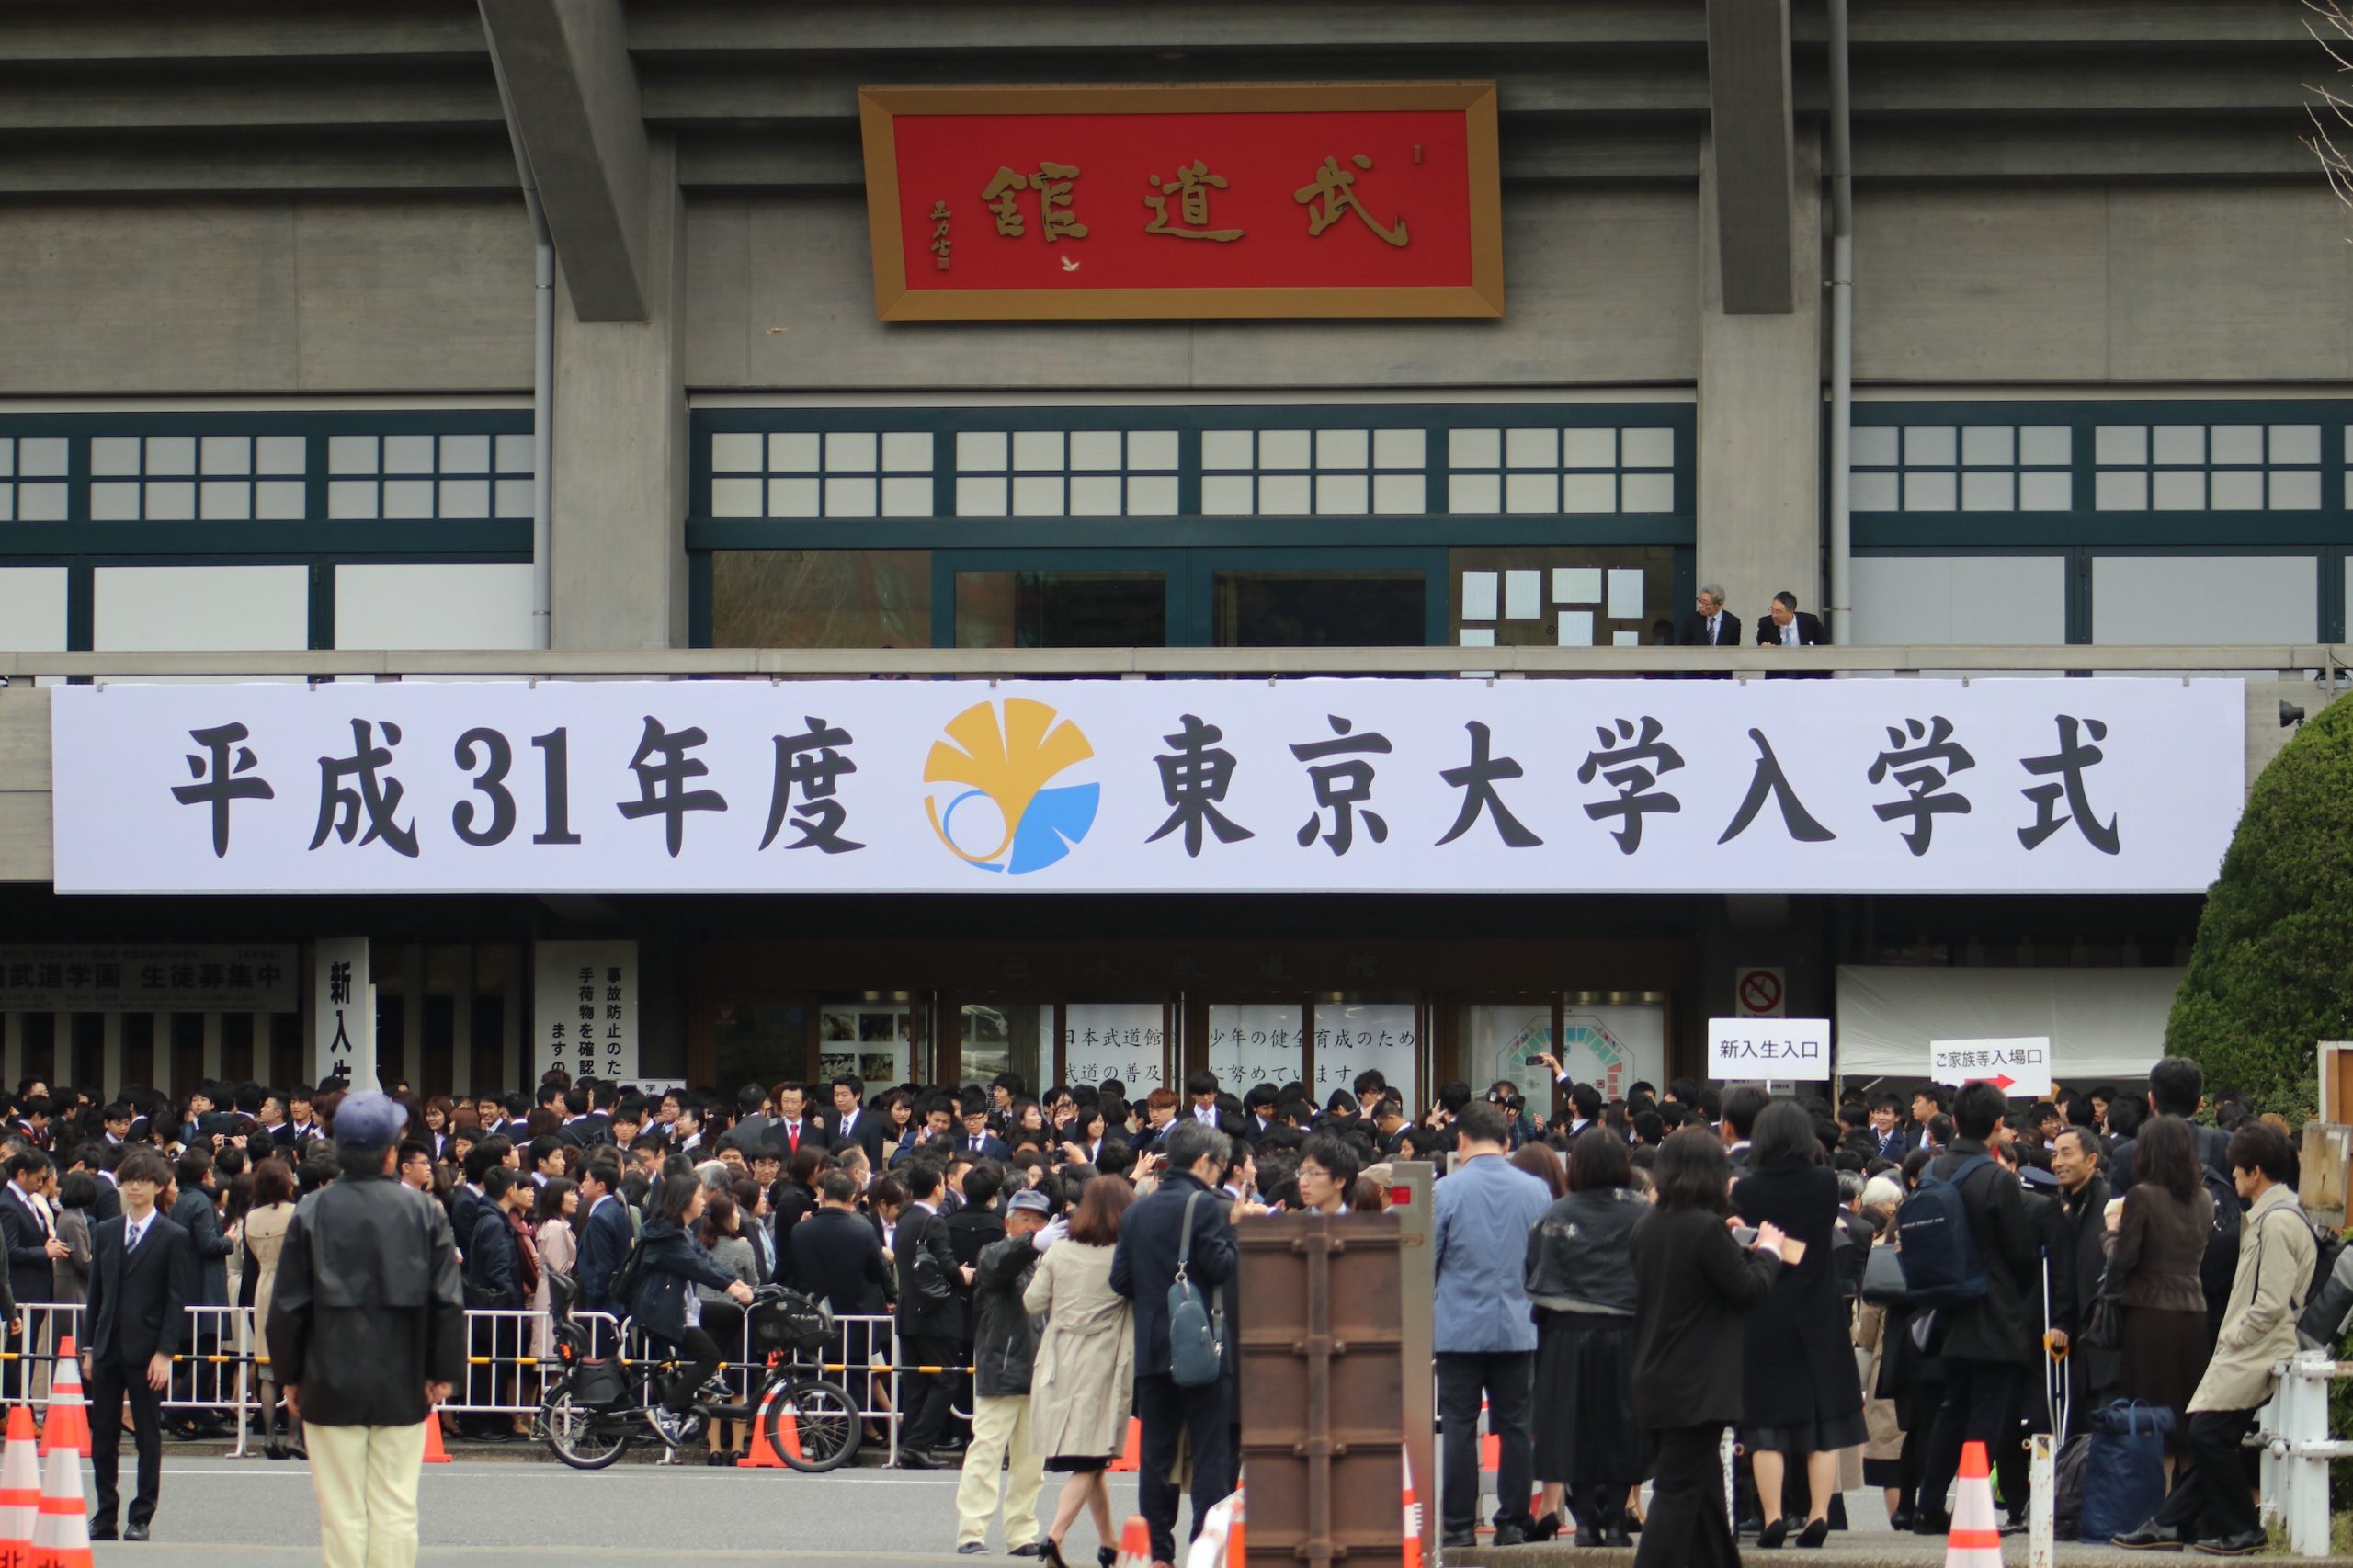 東大 2年ぶりに日本武道館で入学式実施へ 新型コロナ対策指針発表 東大新聞オンライン